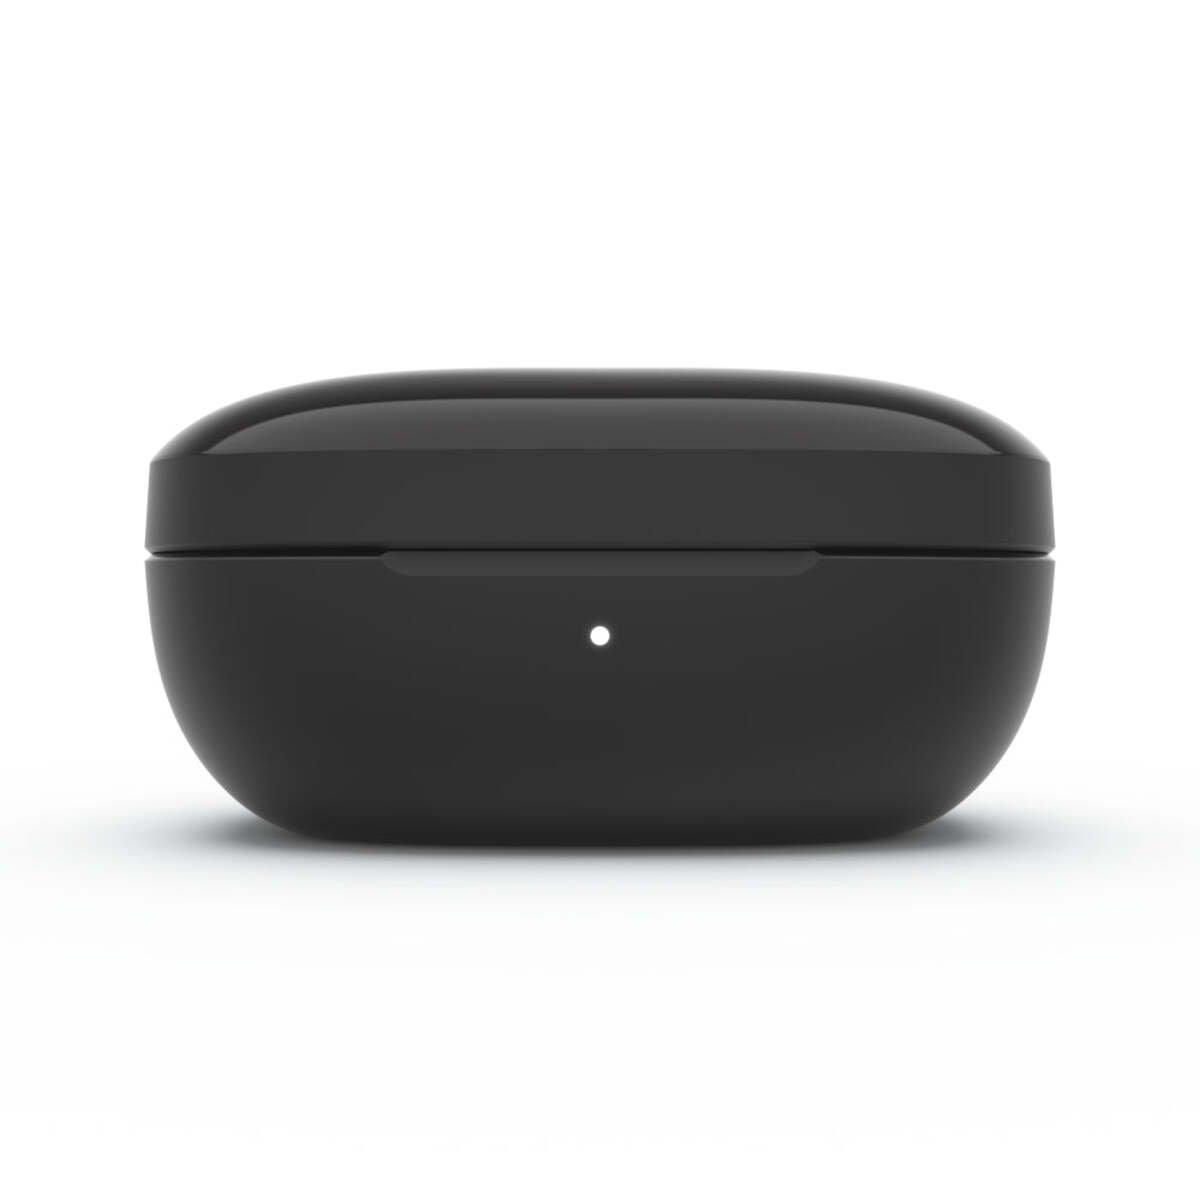 Belkin Soundform Immerse True Wireless Earbuds - Black